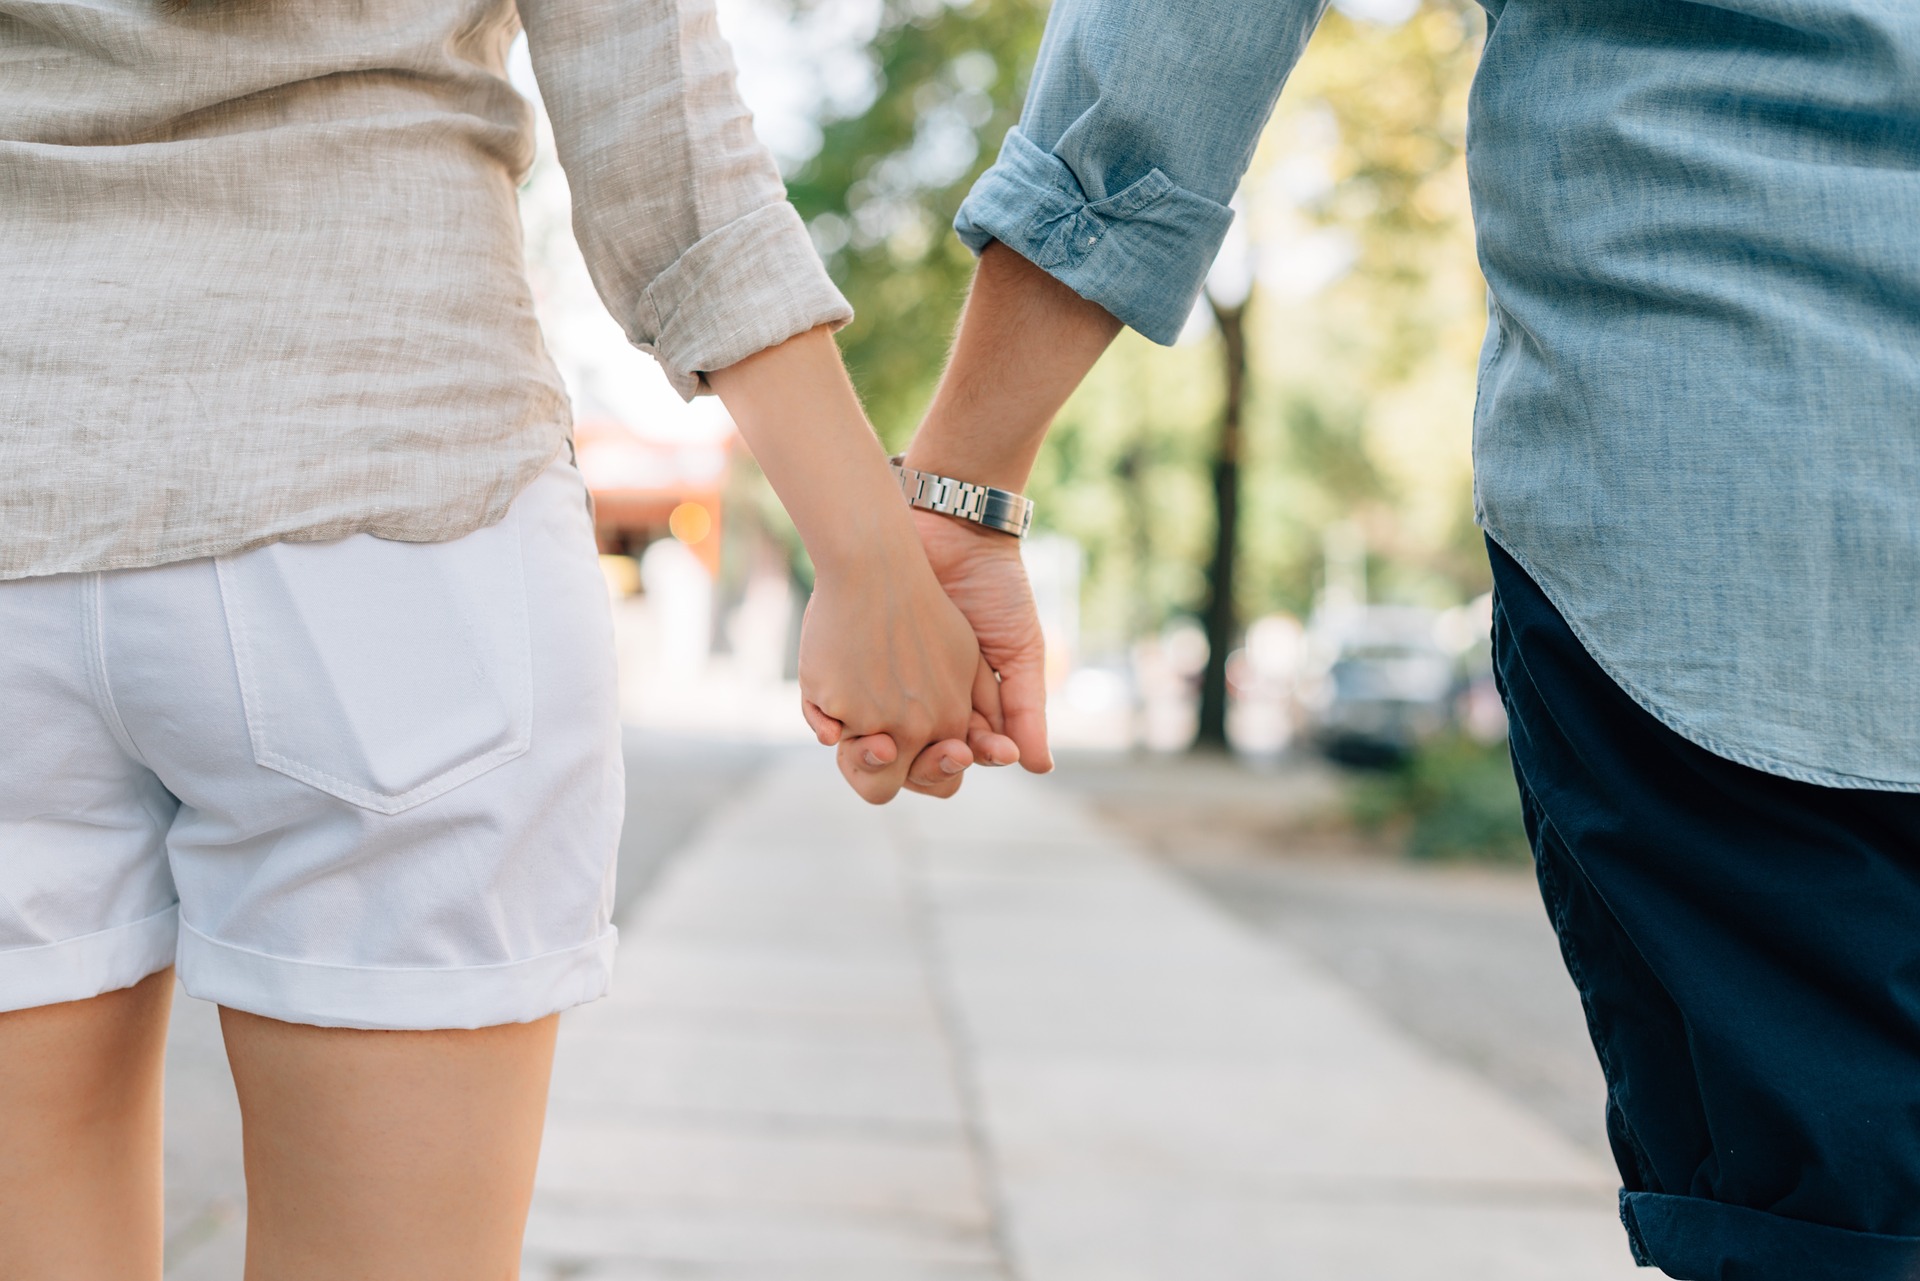 El reto de estar en pareja es saber avanzar juntos respetando el desarrollo de la otra persona. (Foto Prensa Libre: Shutterstock)